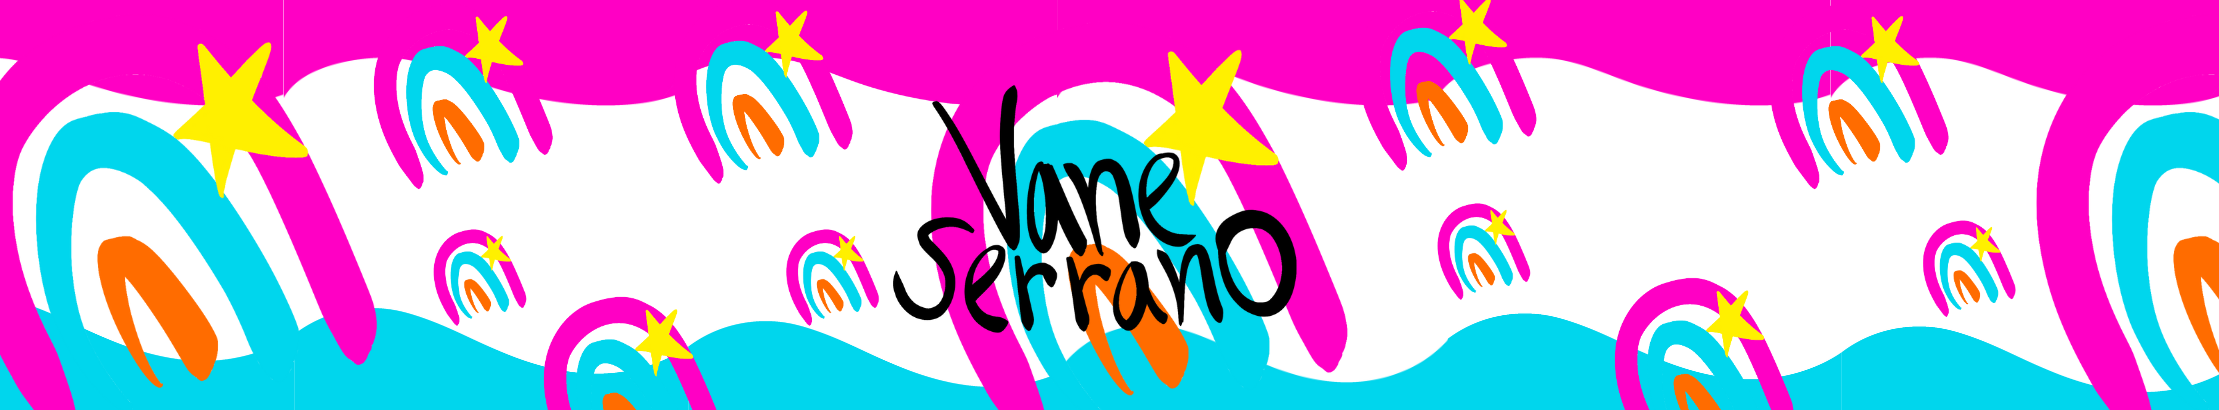 Profil-Banner von Vane Serrano